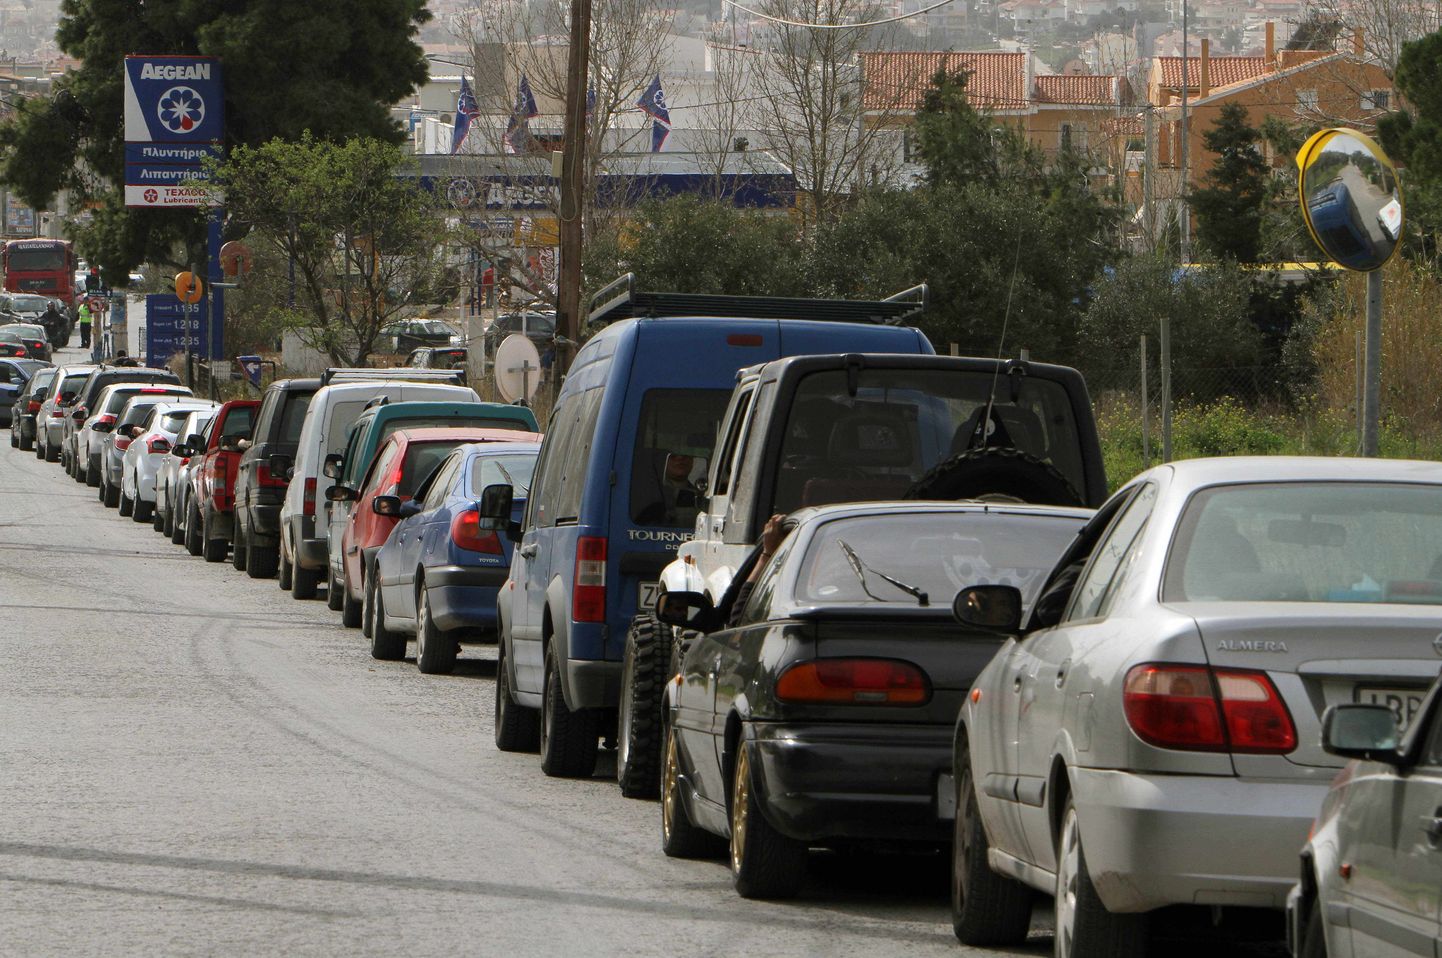 Kreeka ministeerium palus sõidukid kuumuse tõttu koju jätta.